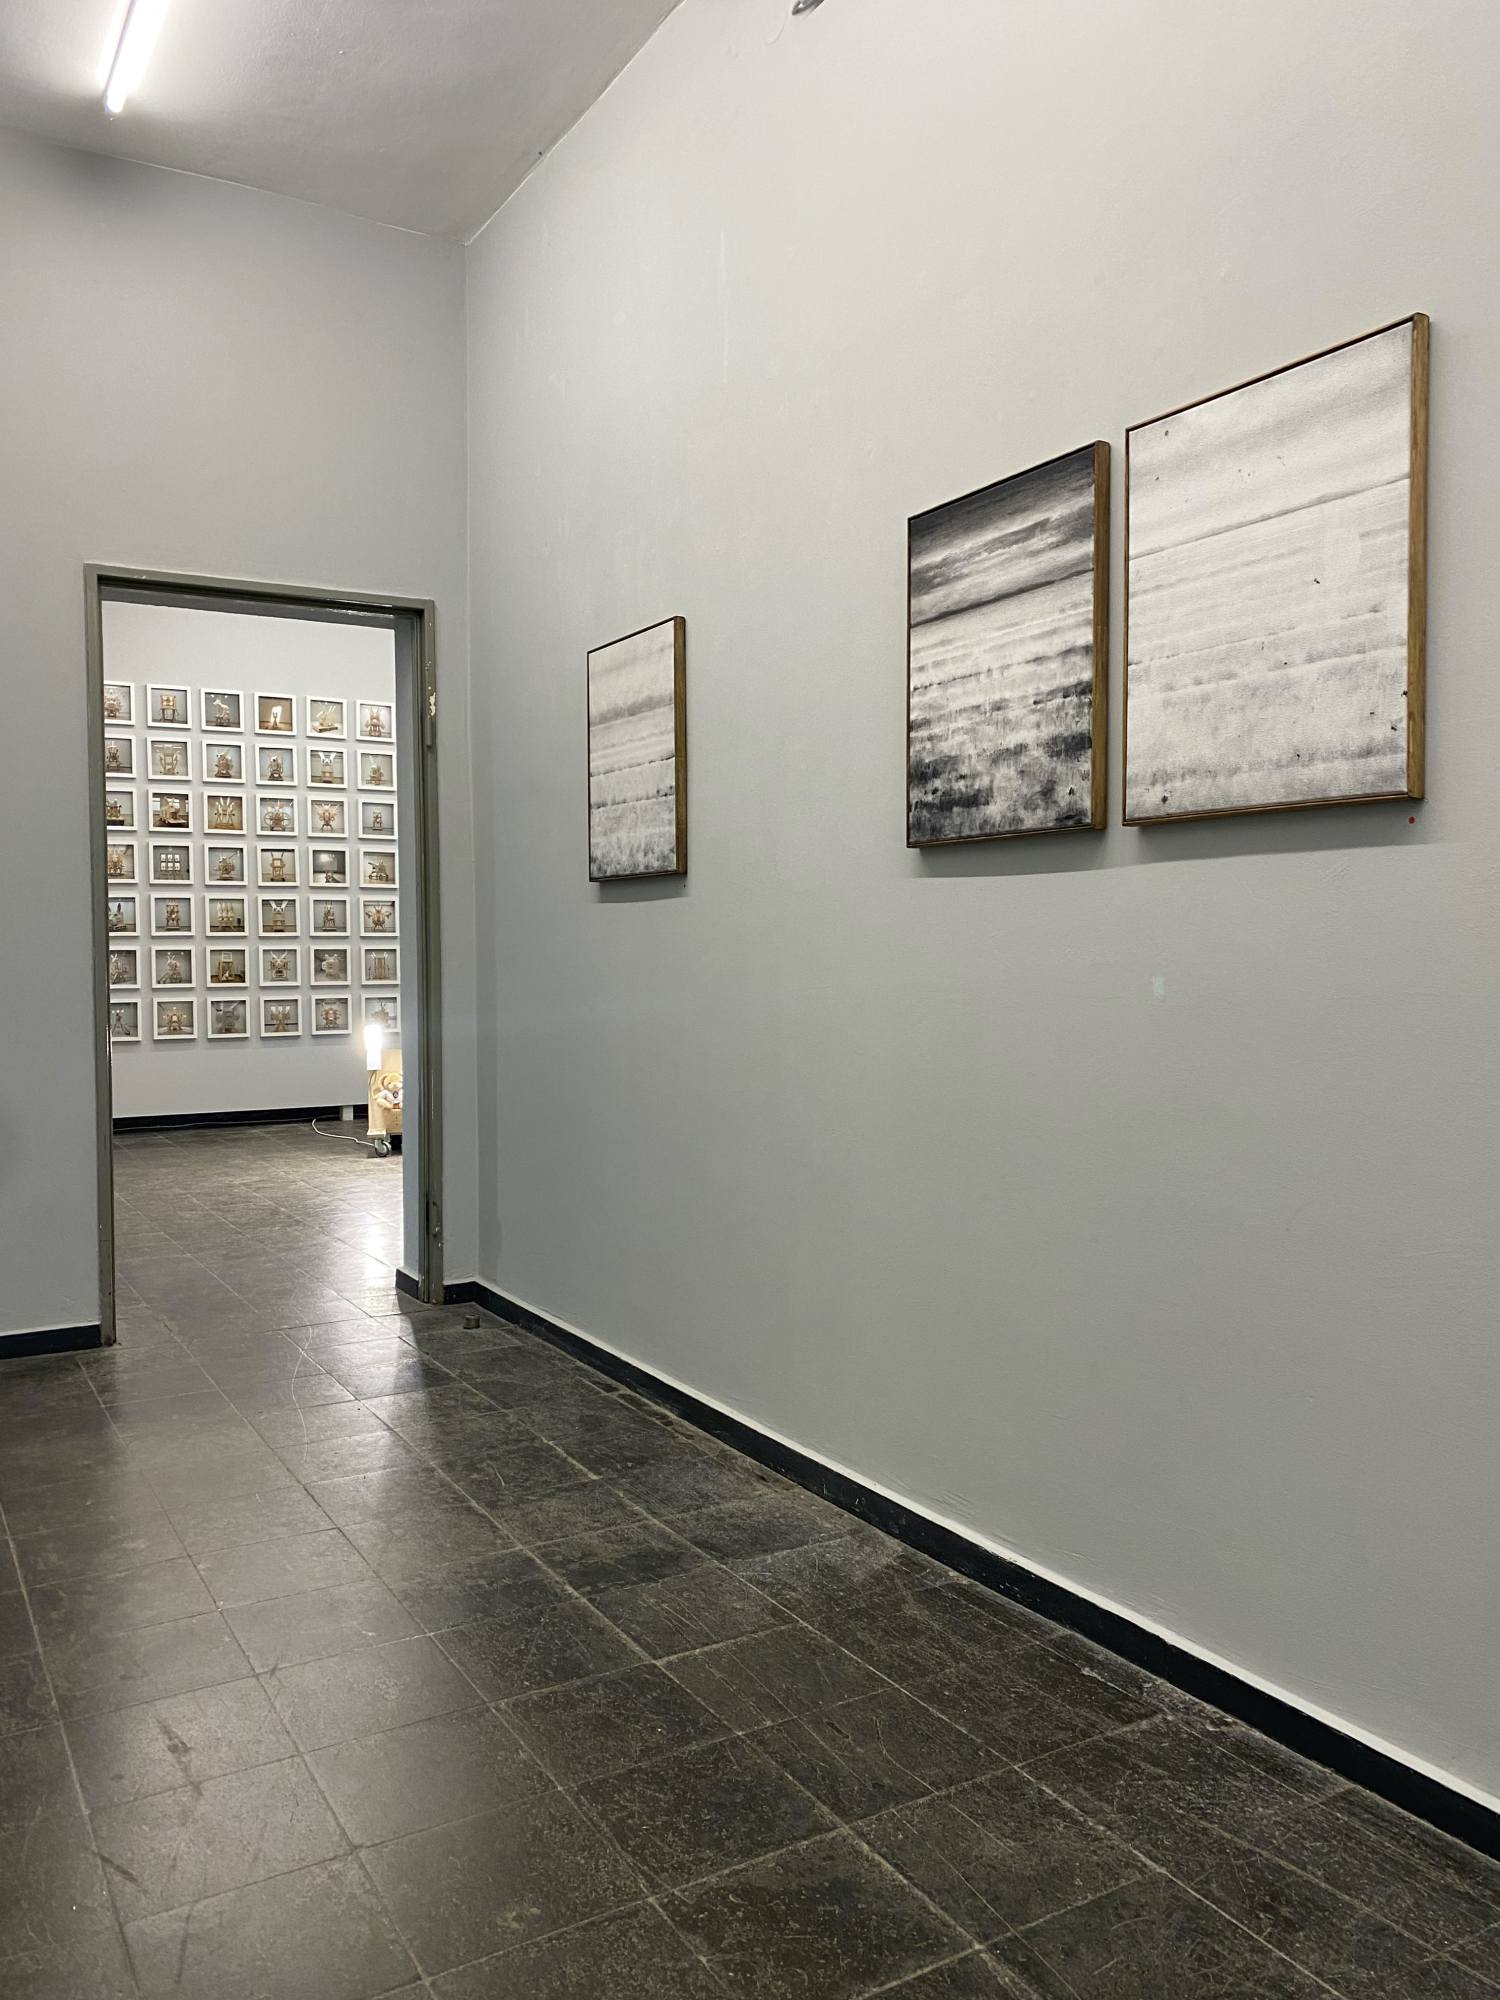 Image:Exhibition view - Enrico Freitag